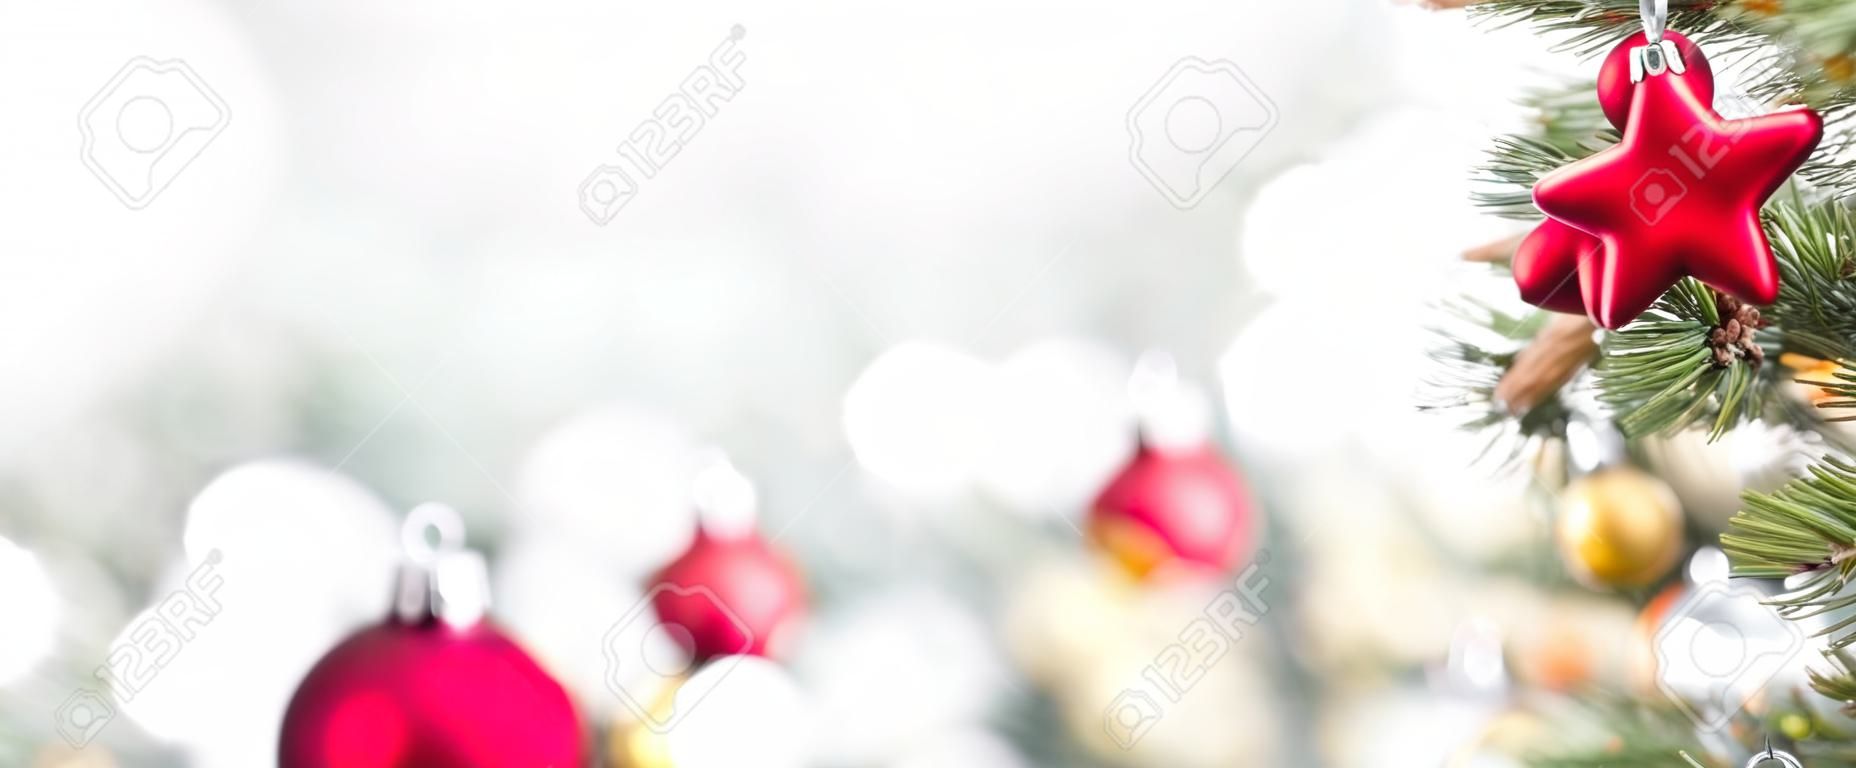 Gros plan d'ornements colorés sur l'arbre de Noël, fond de bannière panoramique avec espace copie